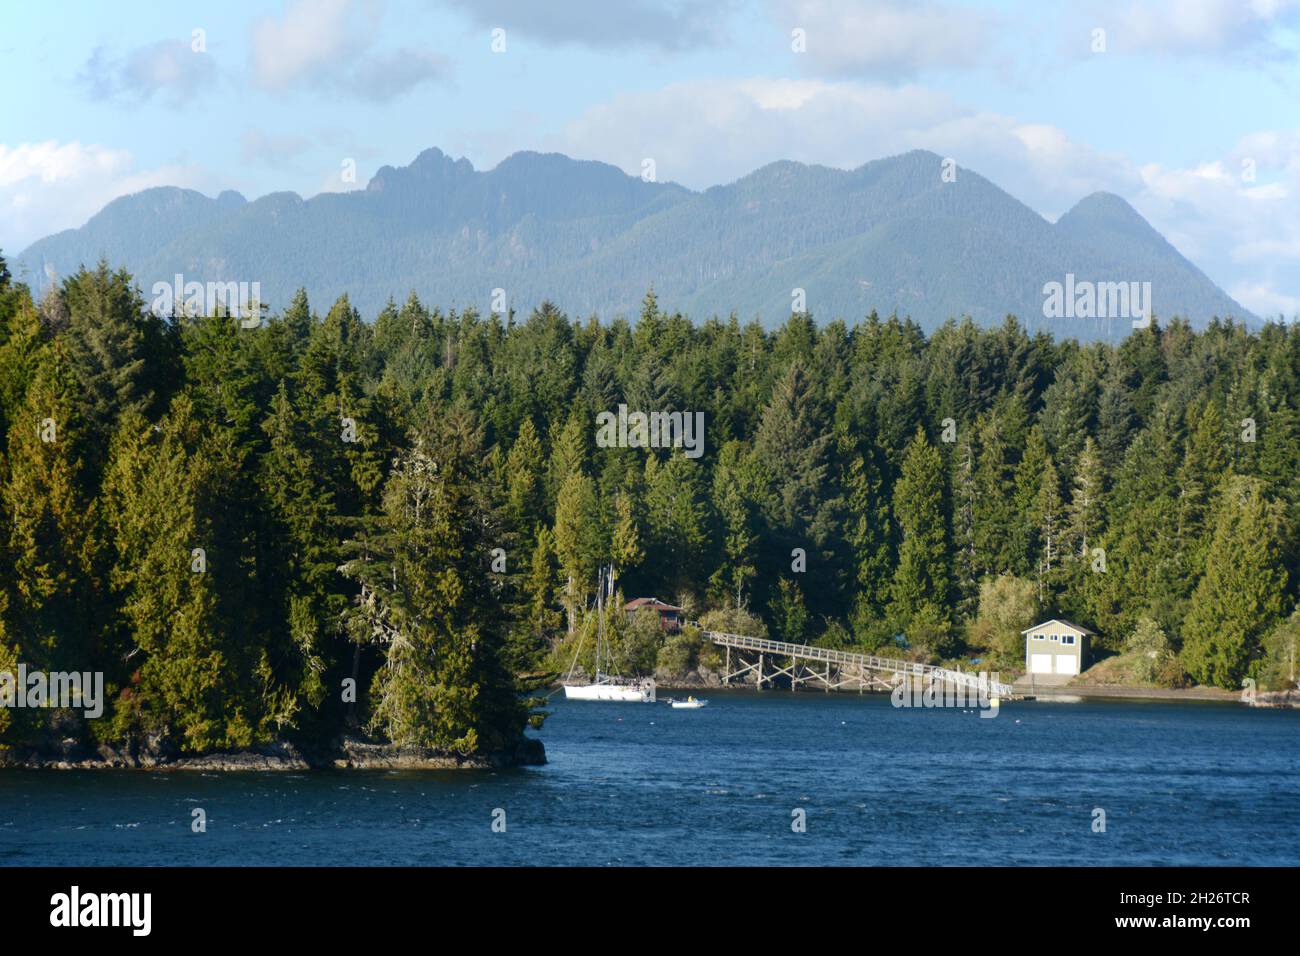 Las orillas de Stone Island y las distantes rocas de Clayoquot Sound, cerca de Tofino, Vancouver Island, British Columbia, Canadá. Foto de stock